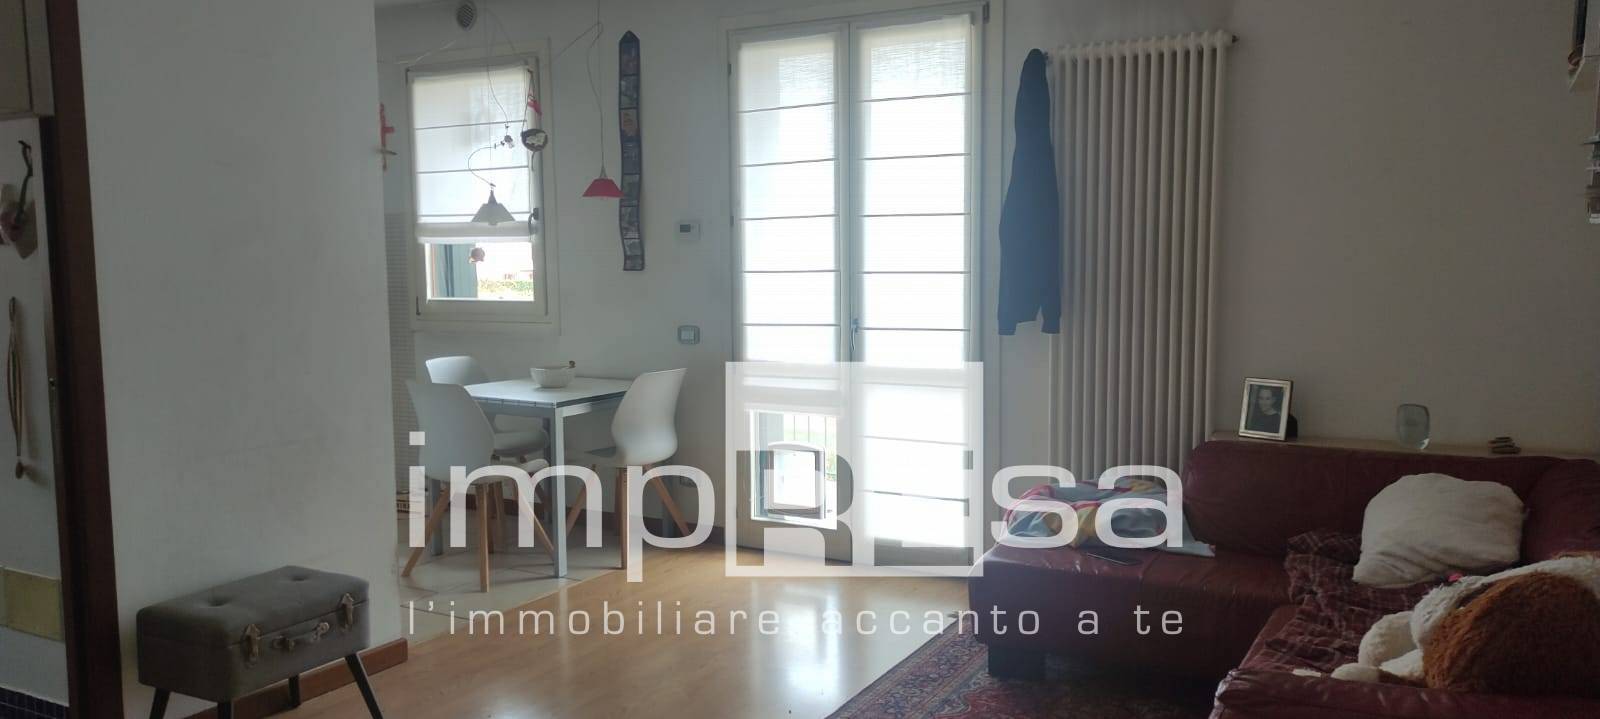 Appartamento in affitto a Paderno, Ponzano Veneto (TV)